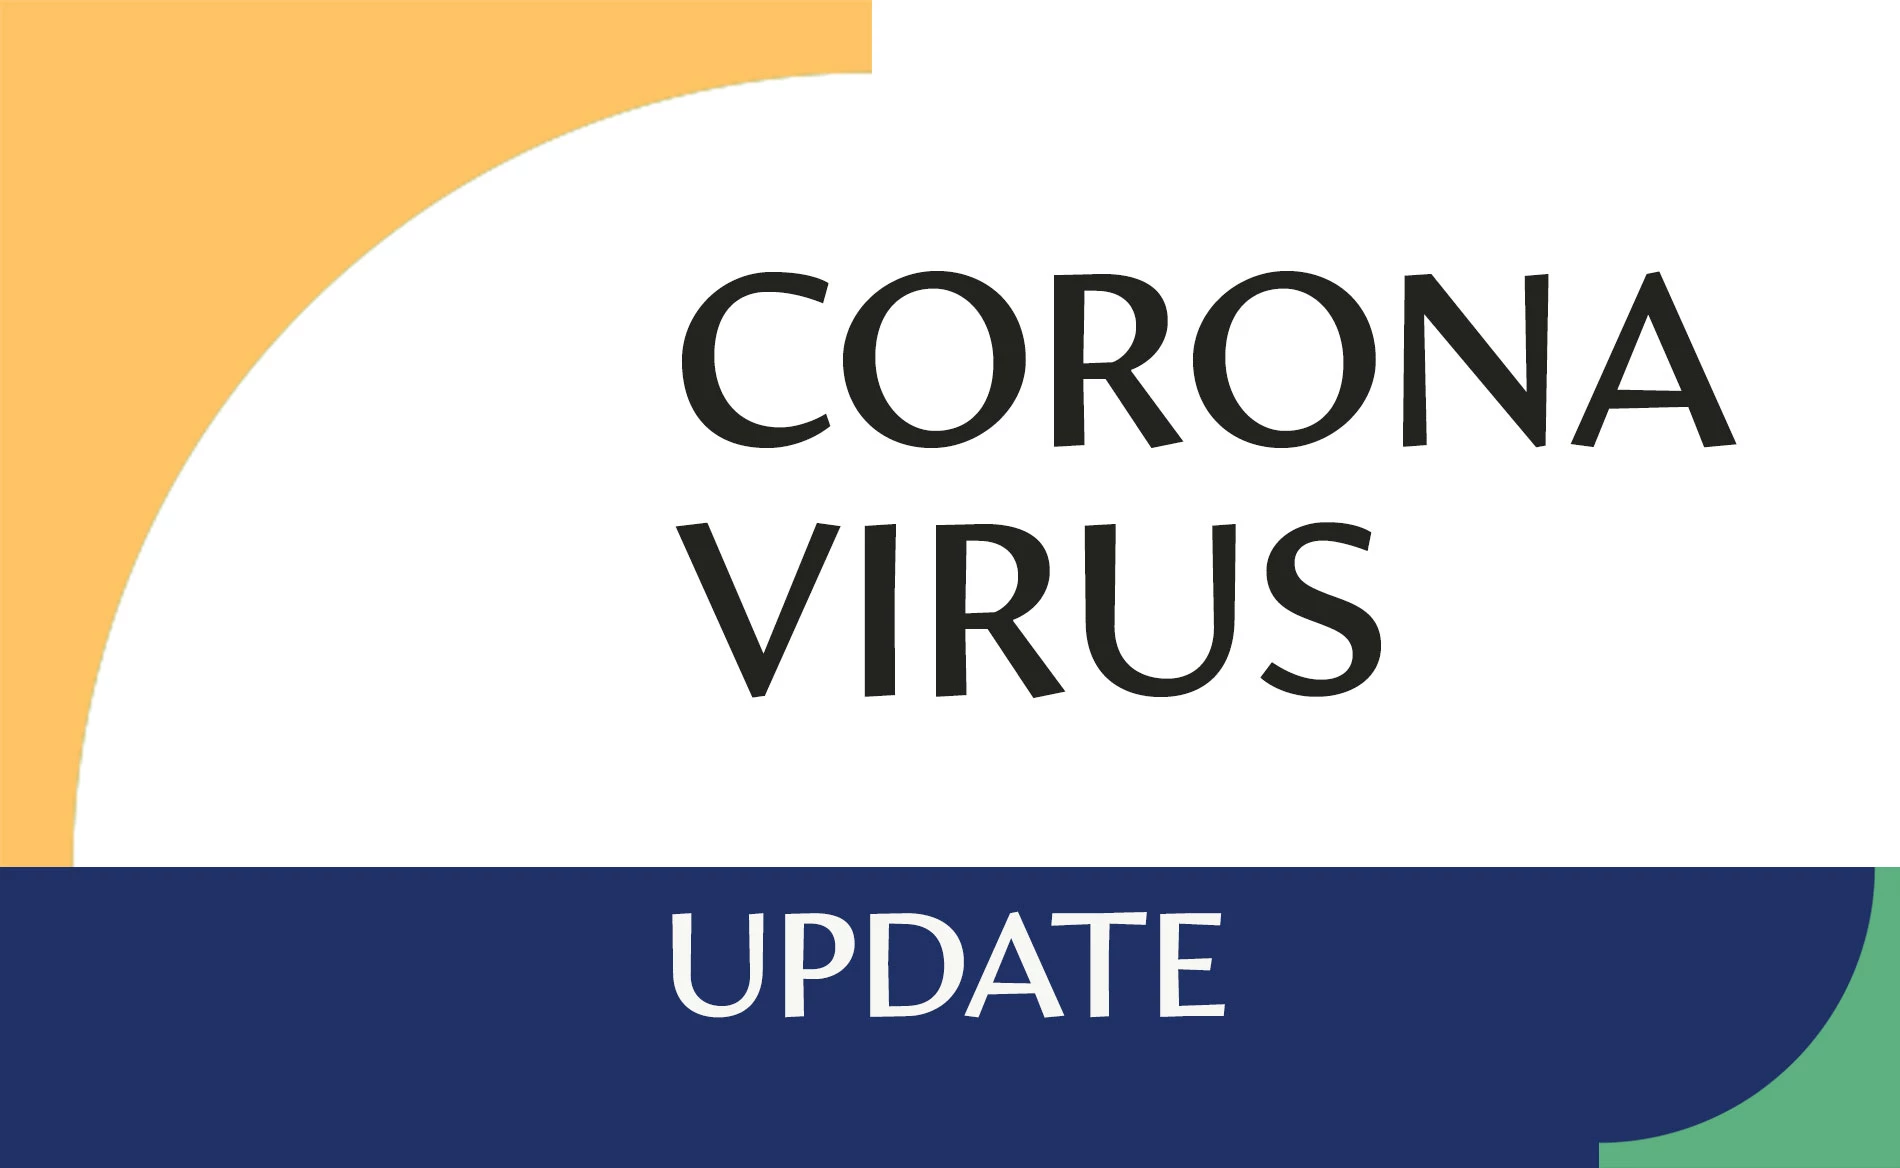 Novedades sobre el coronavirus